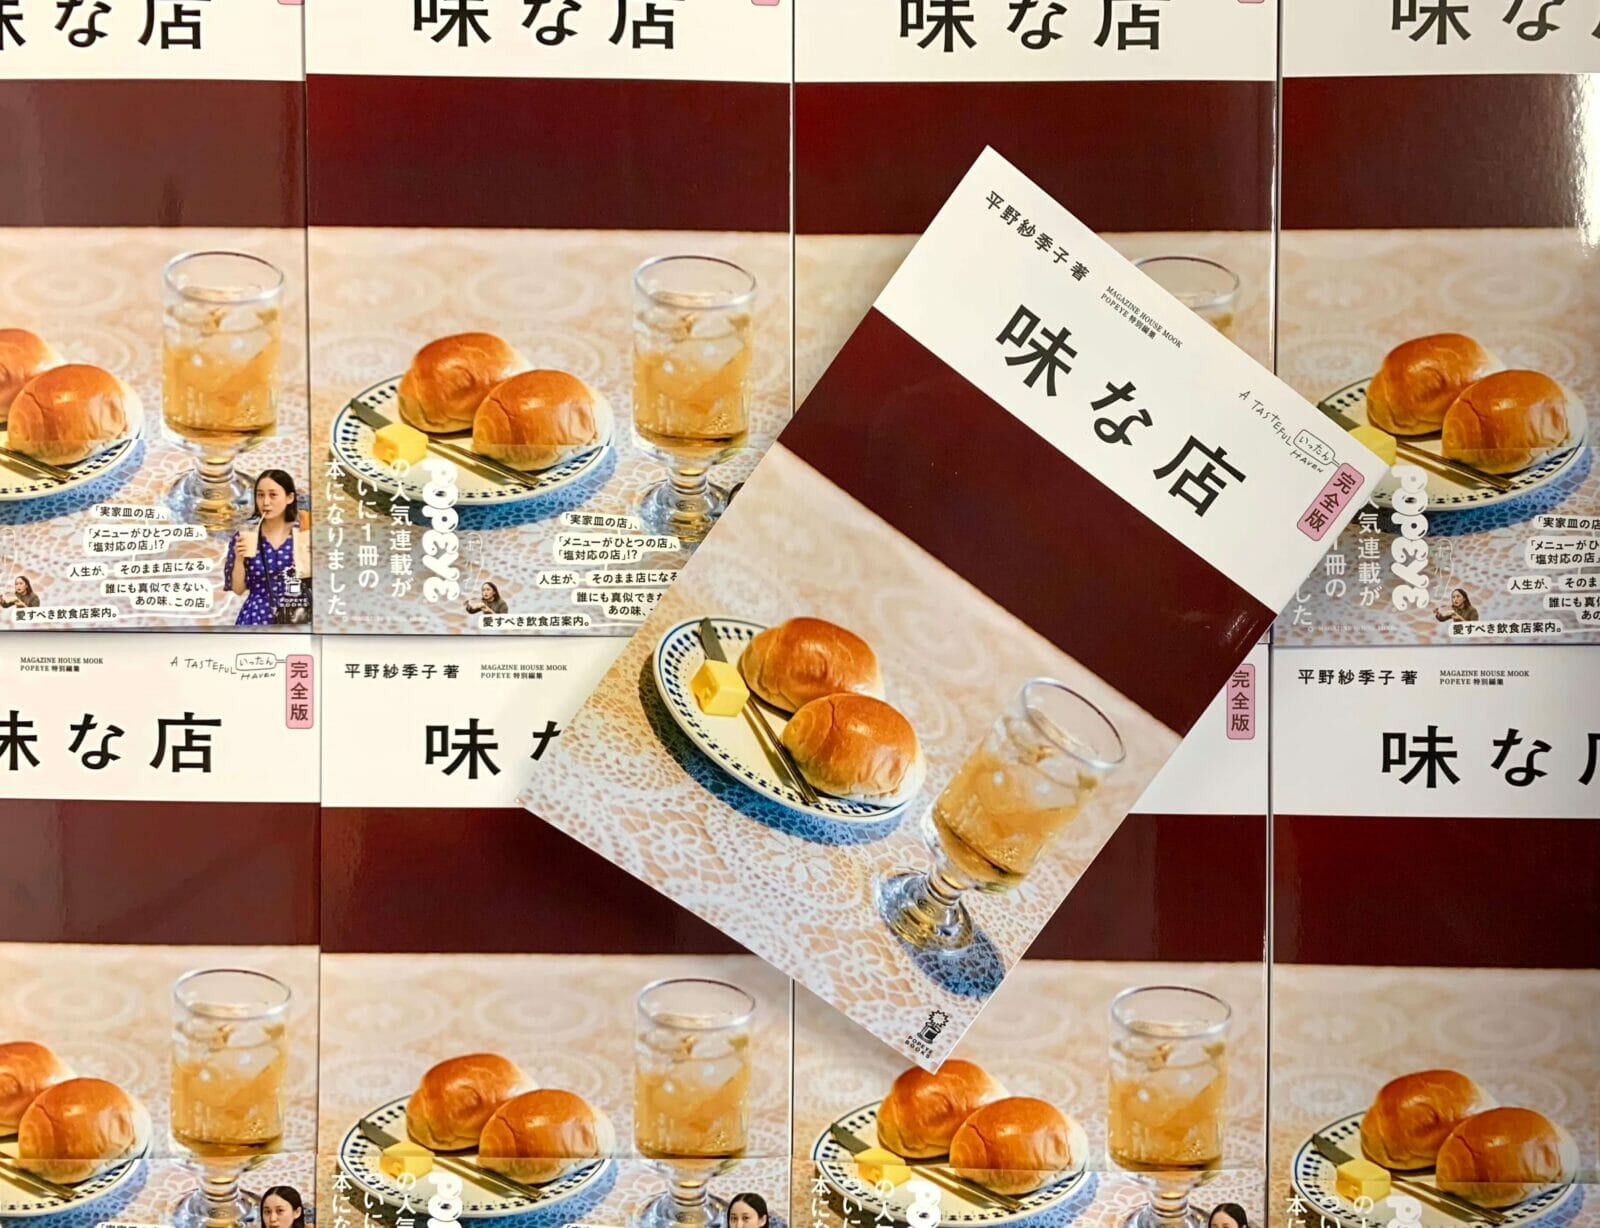 平野紗季子 著『味な店 完全版』は、新しいかたちの飲食店案内です。